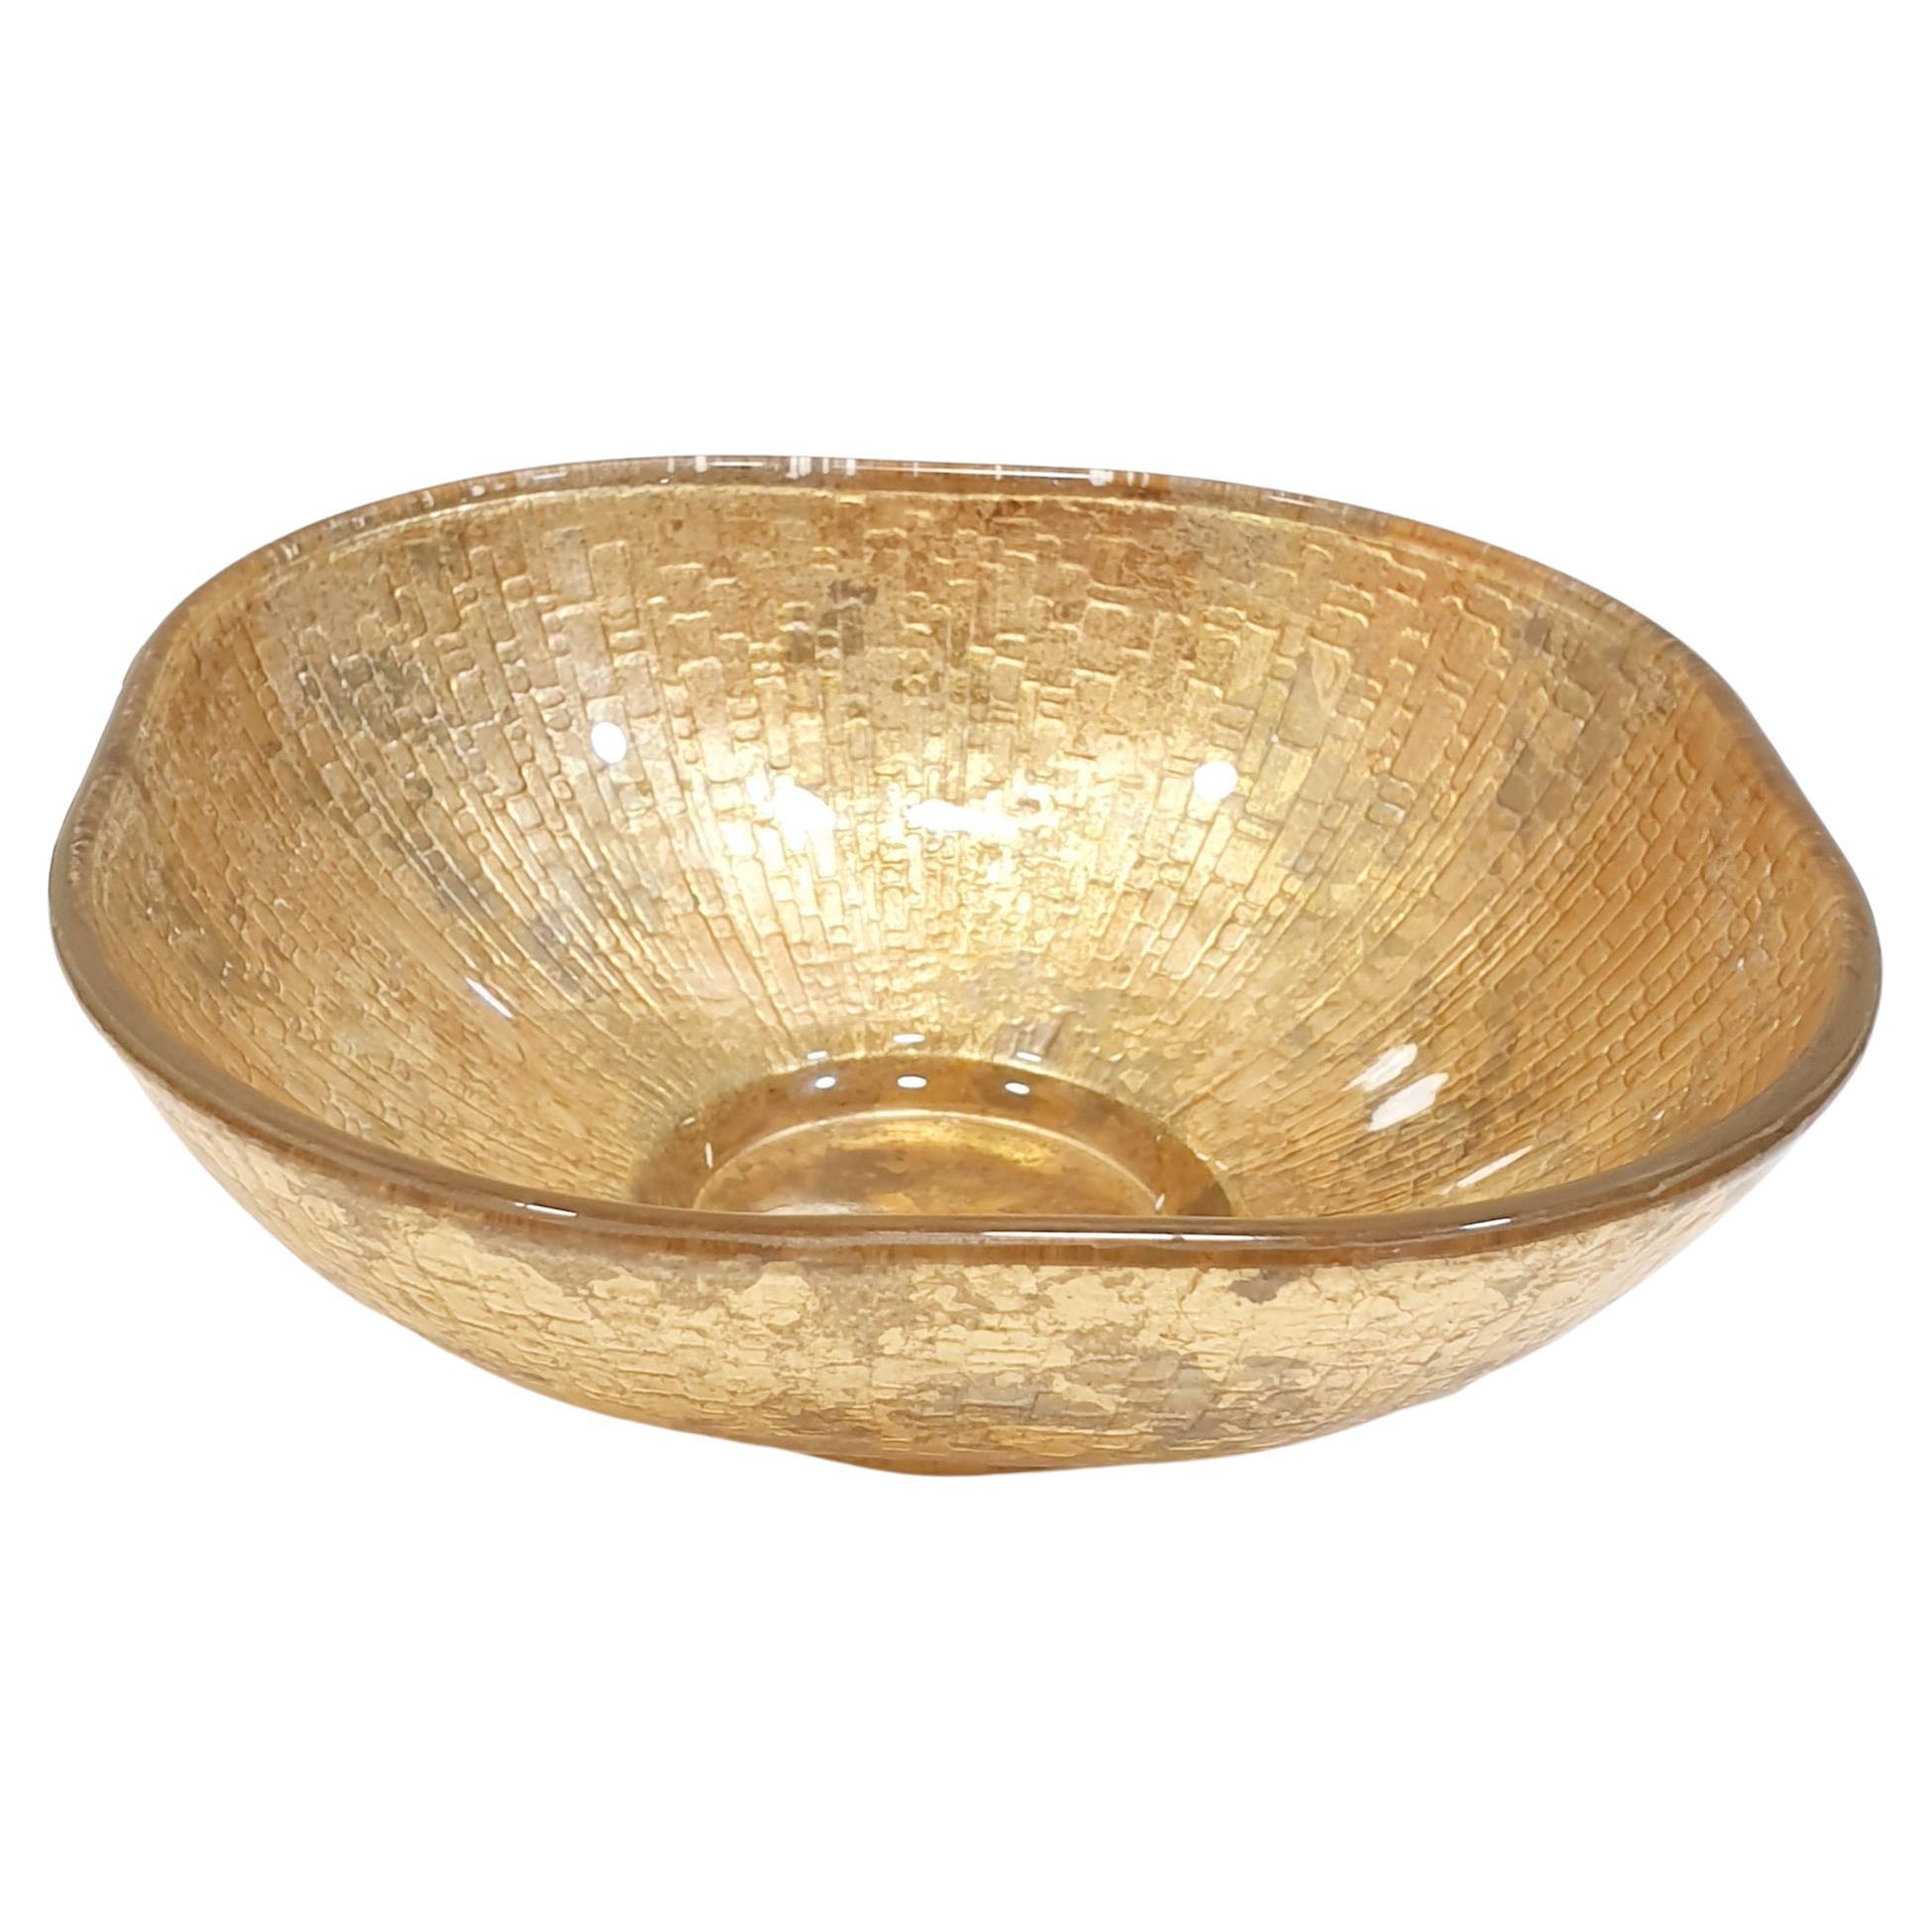 Vintage Signed Lesley Roy Designs Gold Leaf Square Bowl-Crackled Gold Candy Bowl